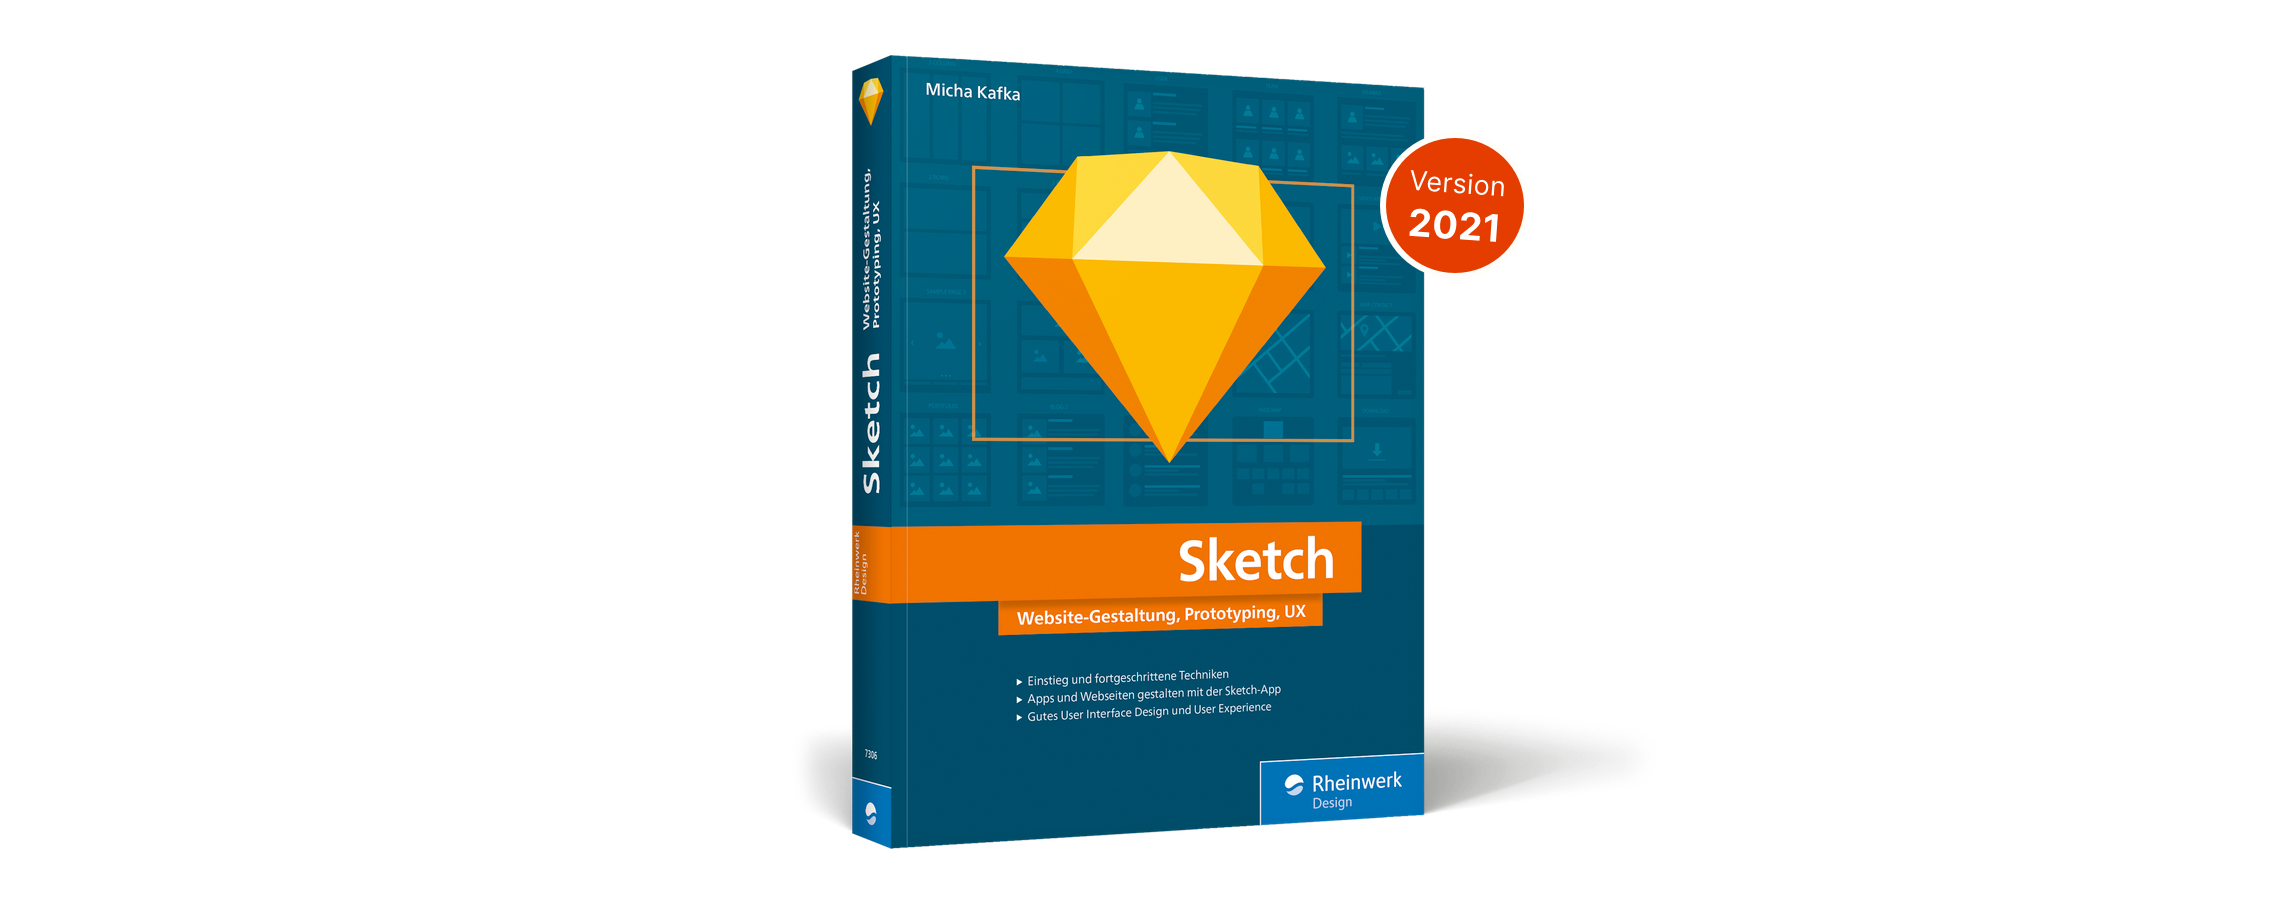 Webdesign, Prototyping und Design Systems mit Sketch auf mehr als 350 Seiten für Anfänger und Fortgeschrittene im Sketch Buch